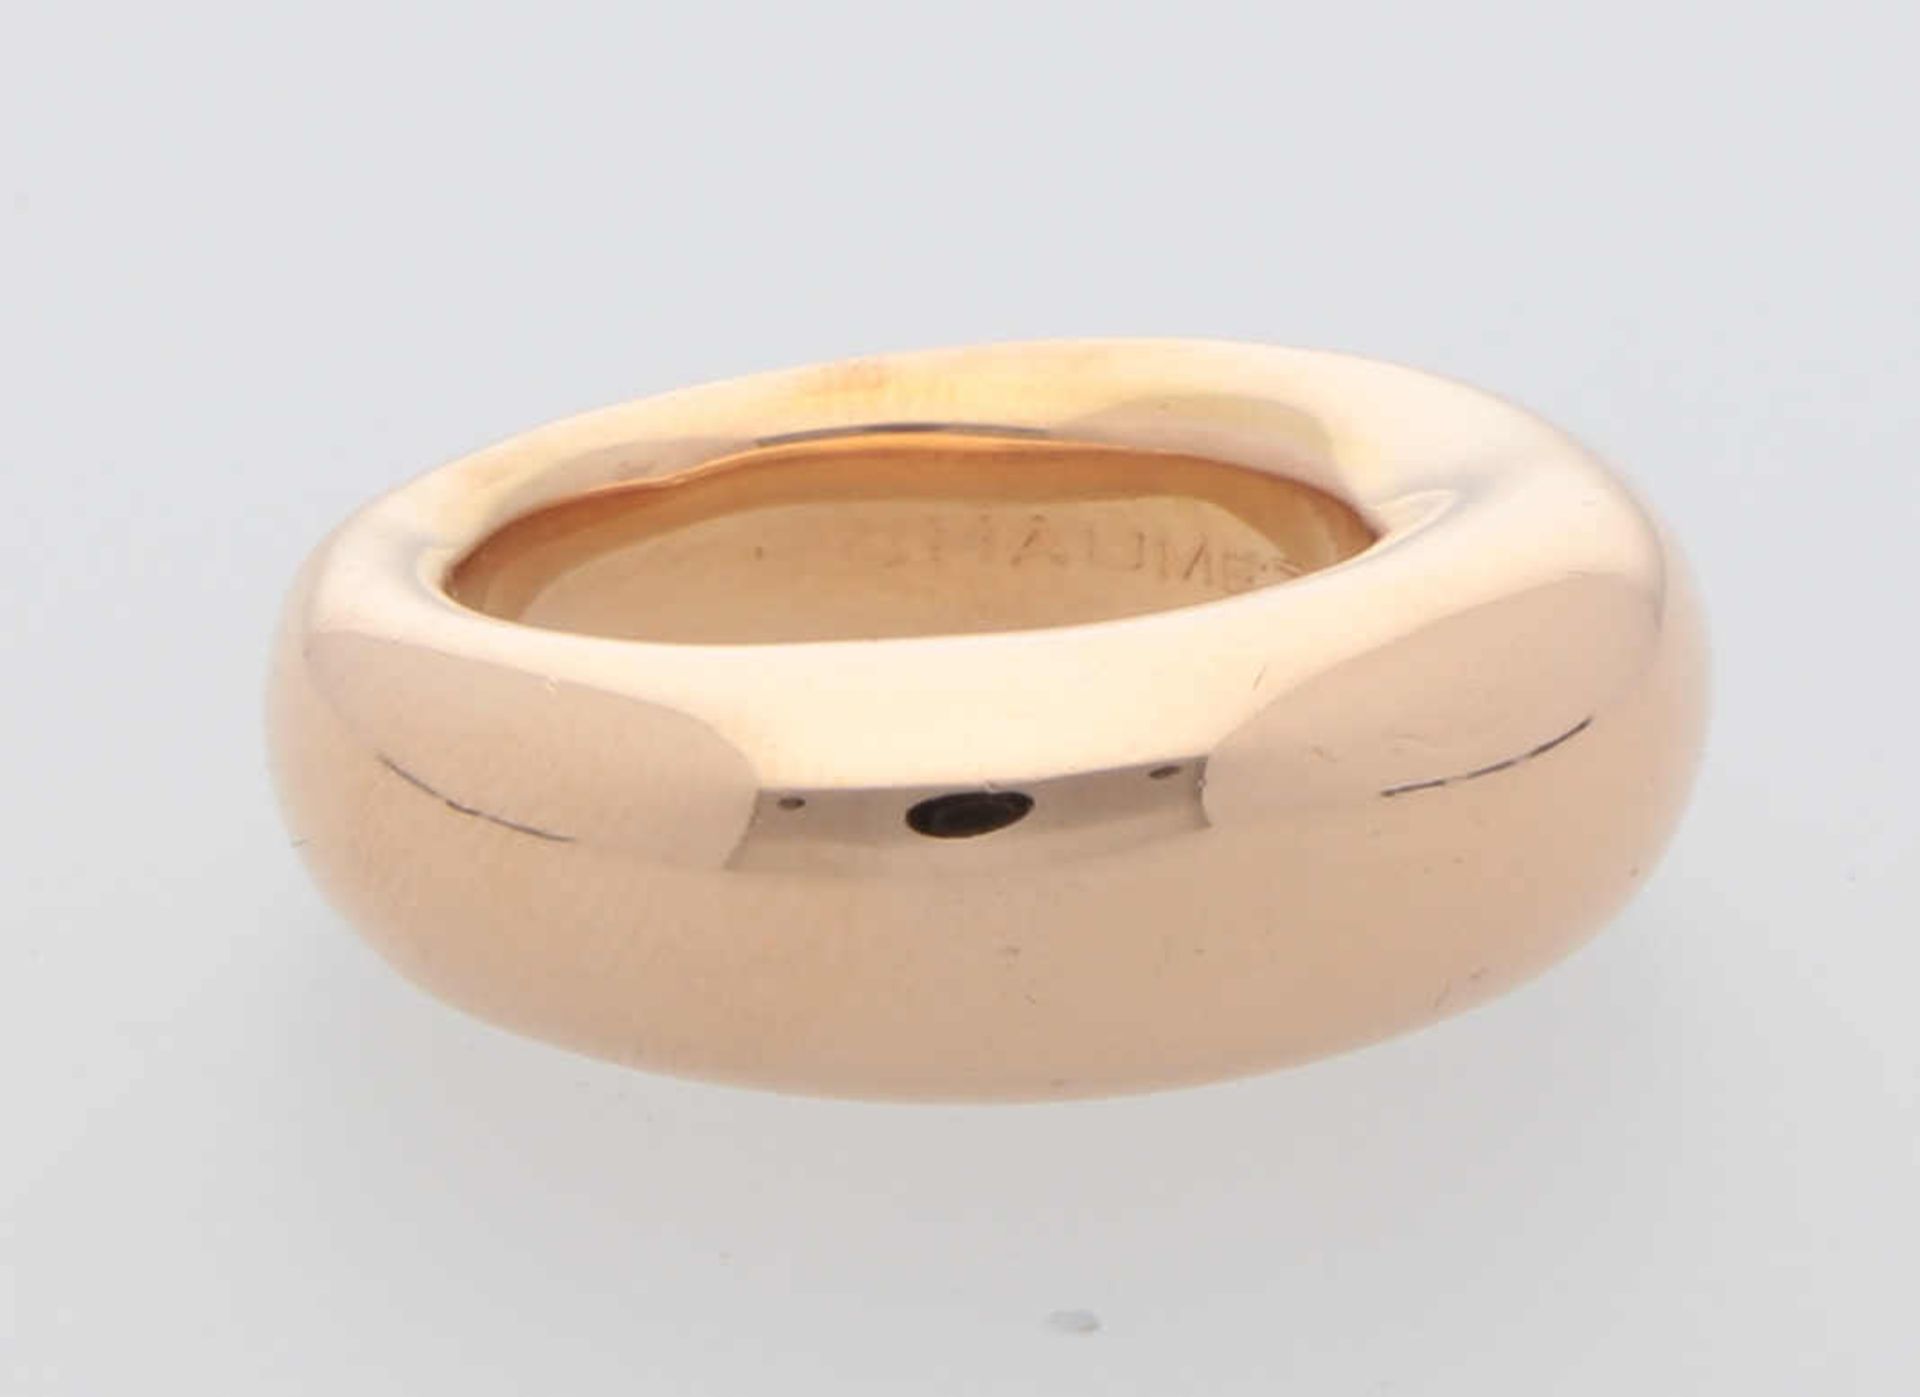 CHAUMET Ring Neuwertiger Ring in Roségold 18K edel bombiert und poliert, Ringgrösse 52, 12,2 g, - Bild 2 aus 3